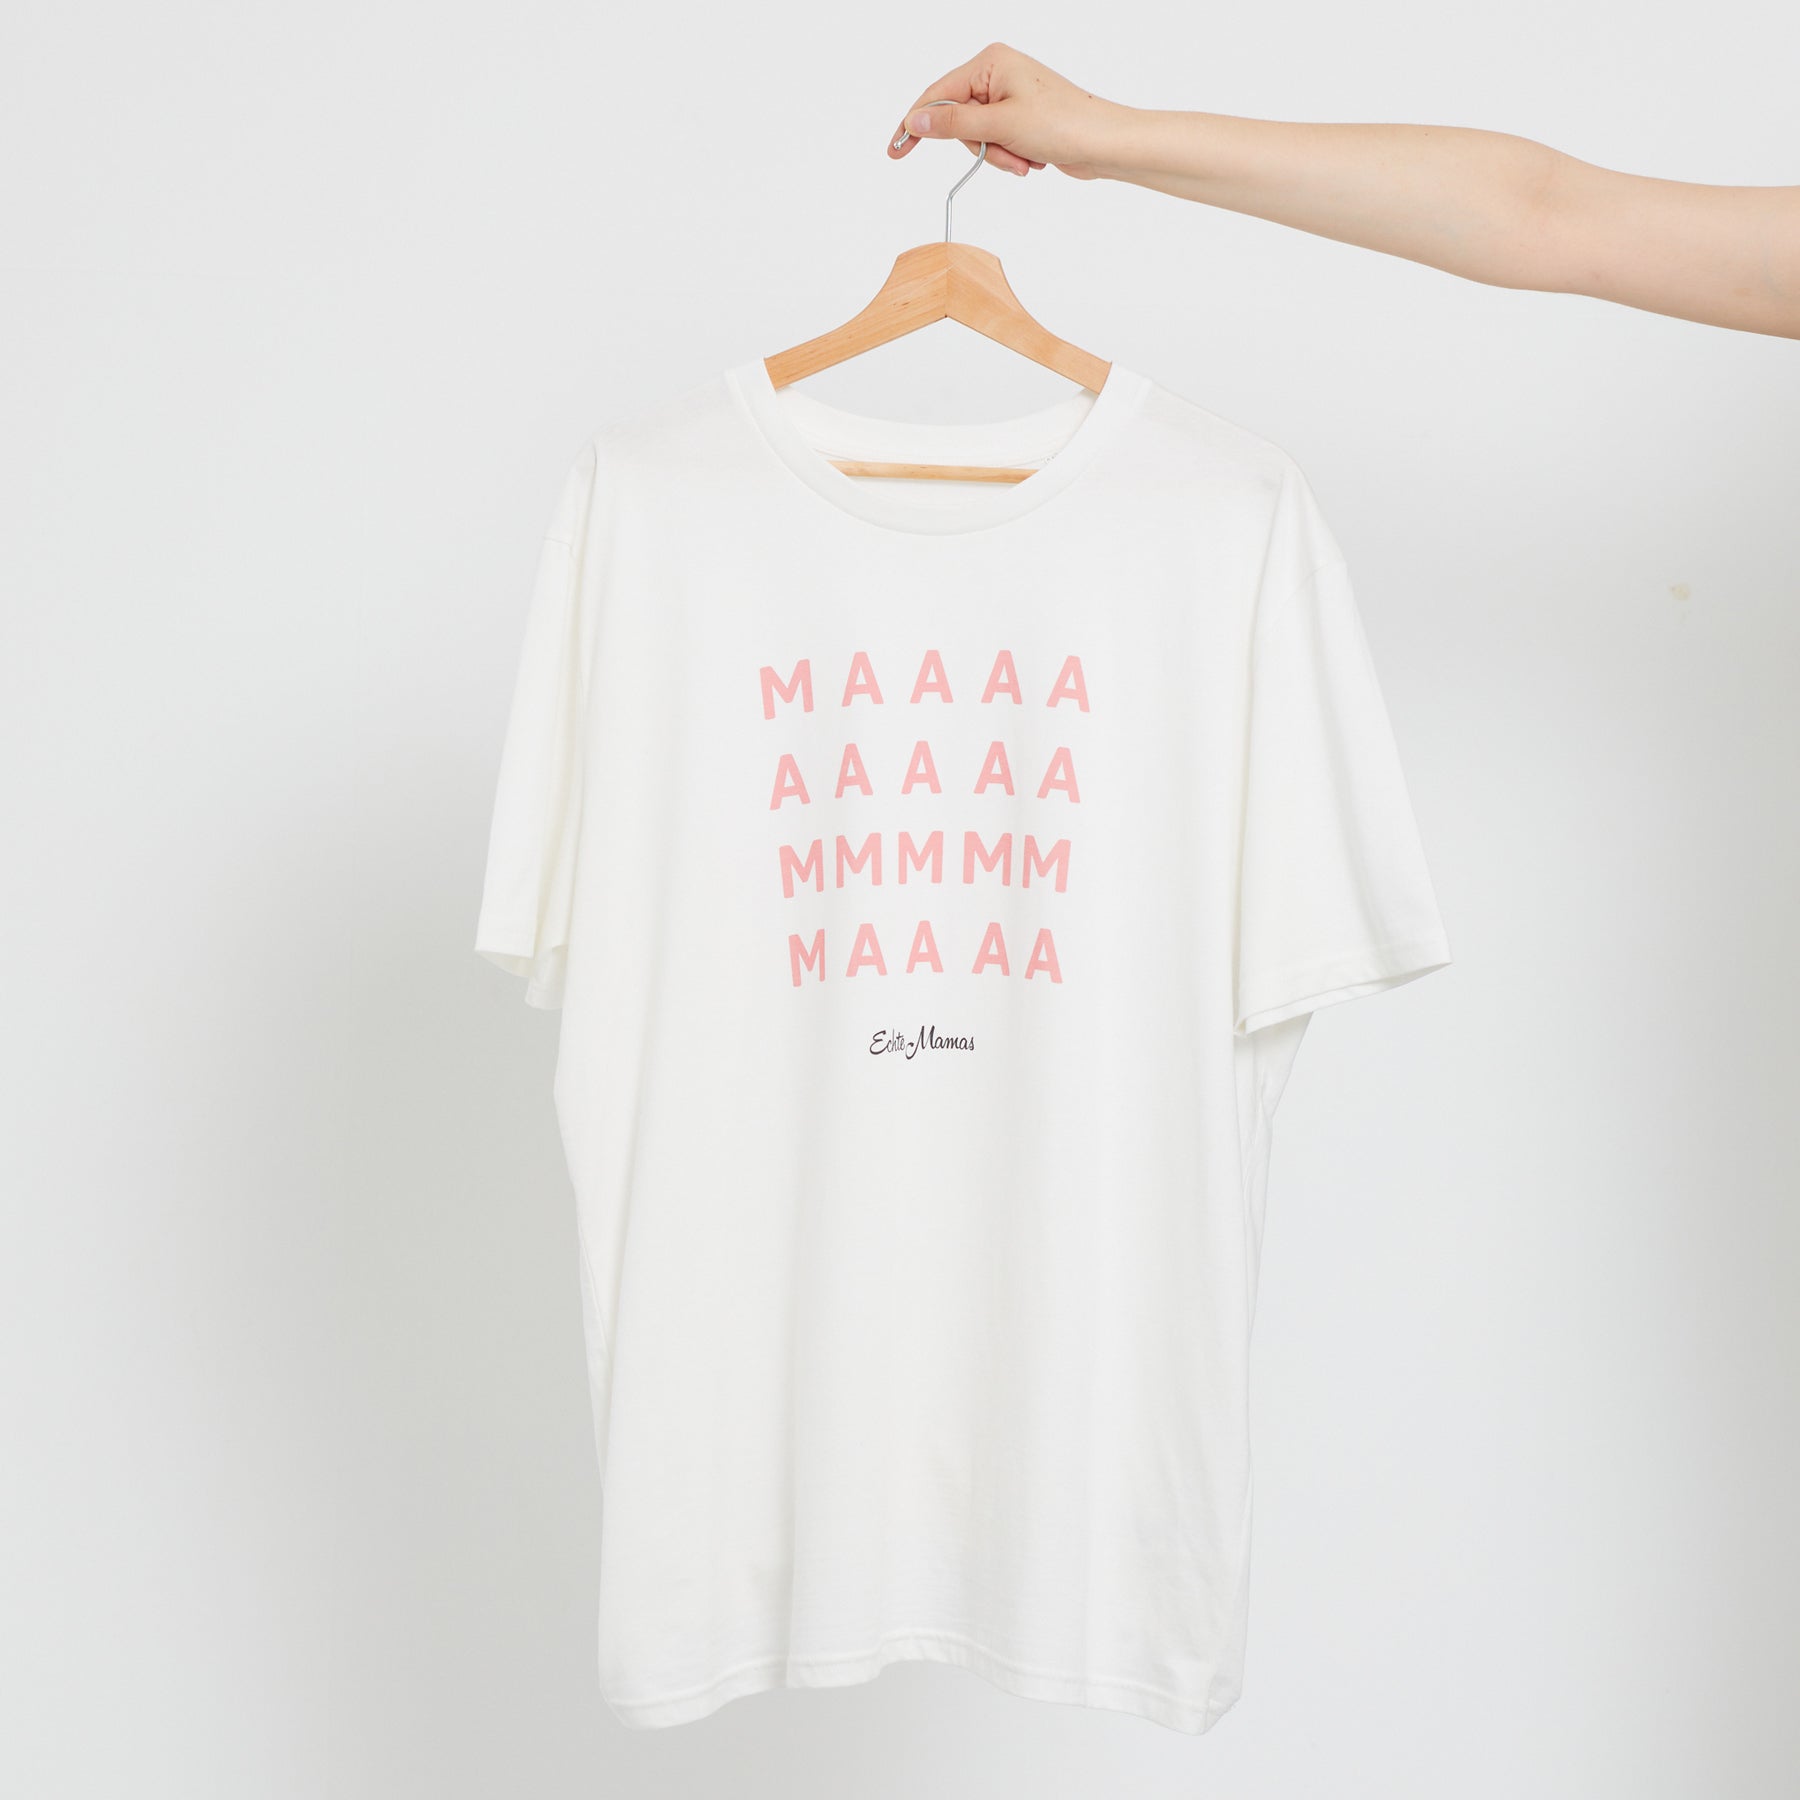 T-Shirt: MAAAAMMMAAA